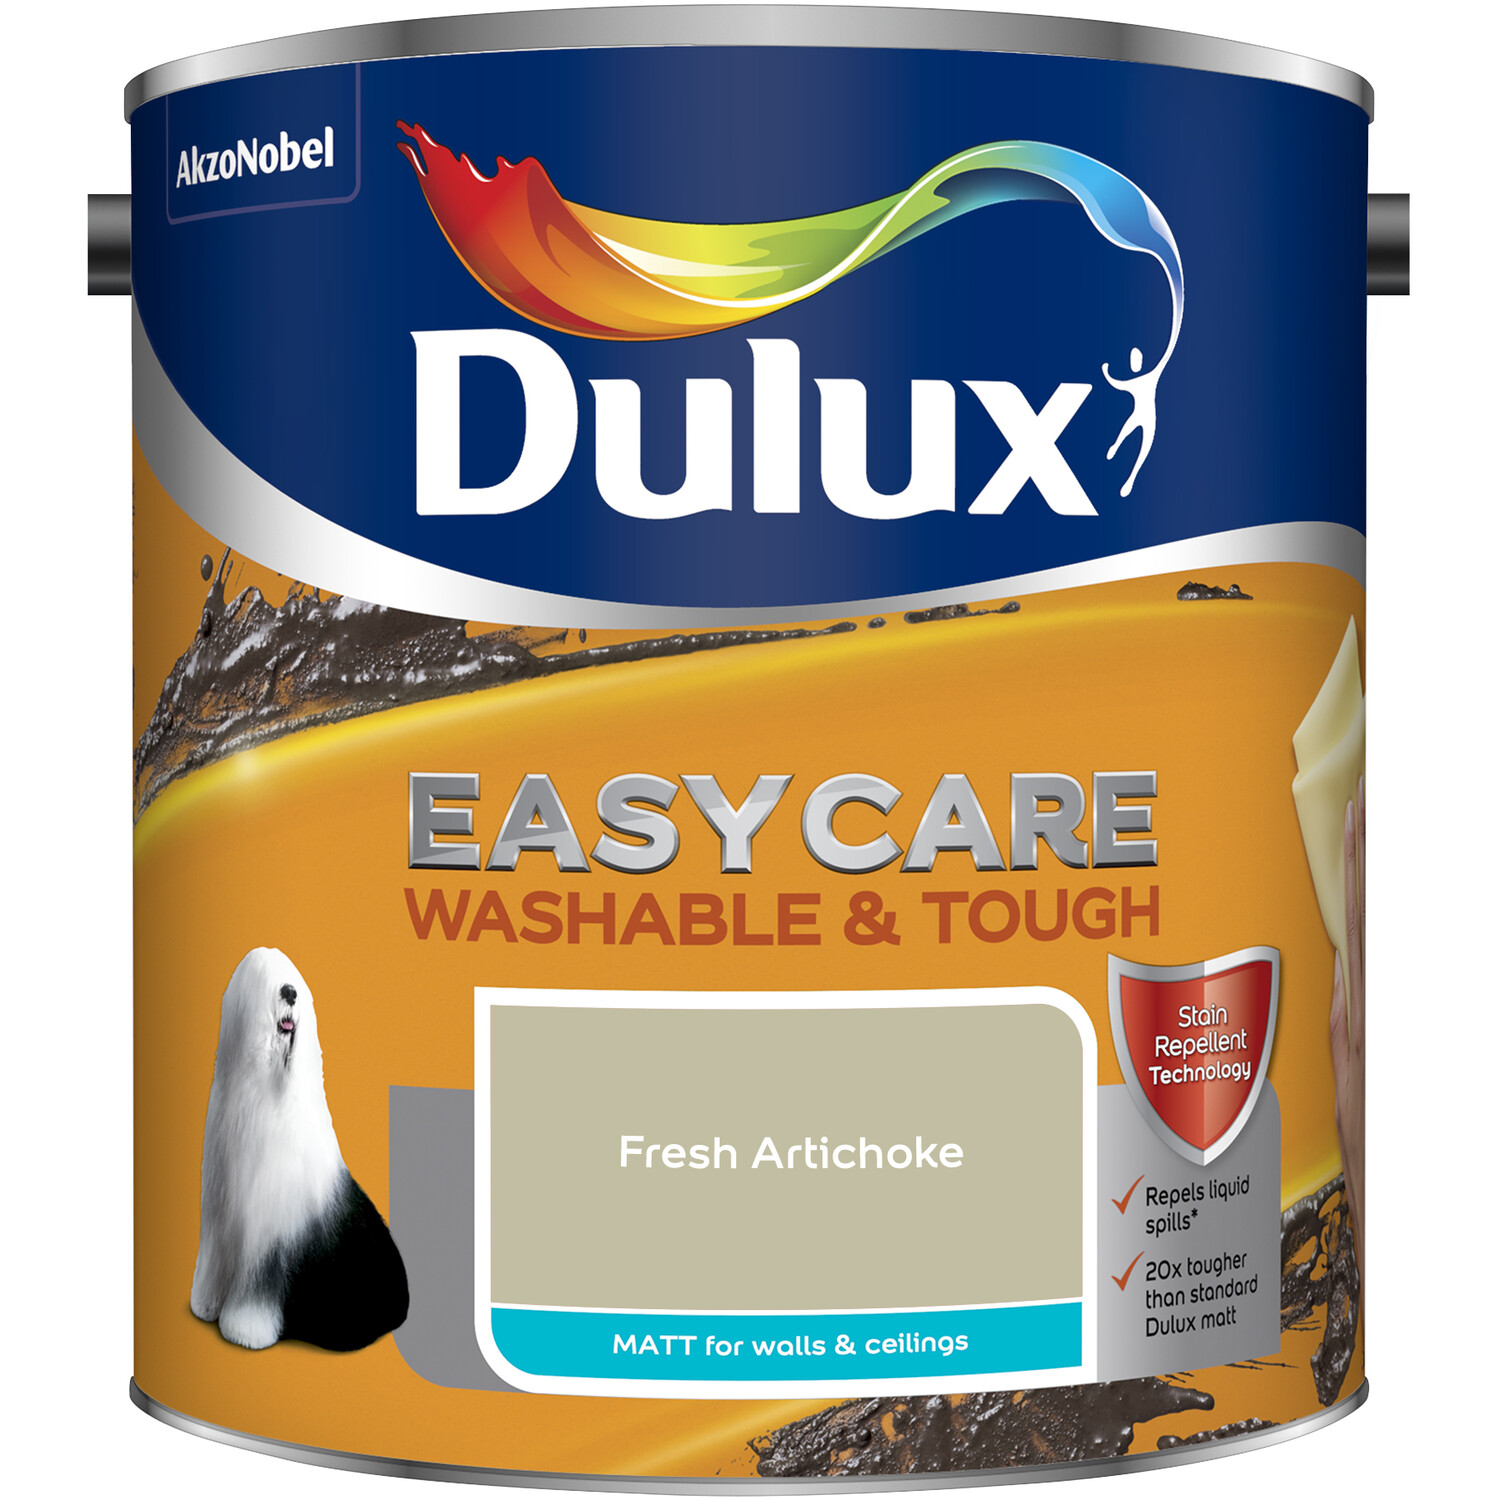 Dulux Easycare Washable & Tough Fresh Artichoke Matt Paint 2.5L Image 2